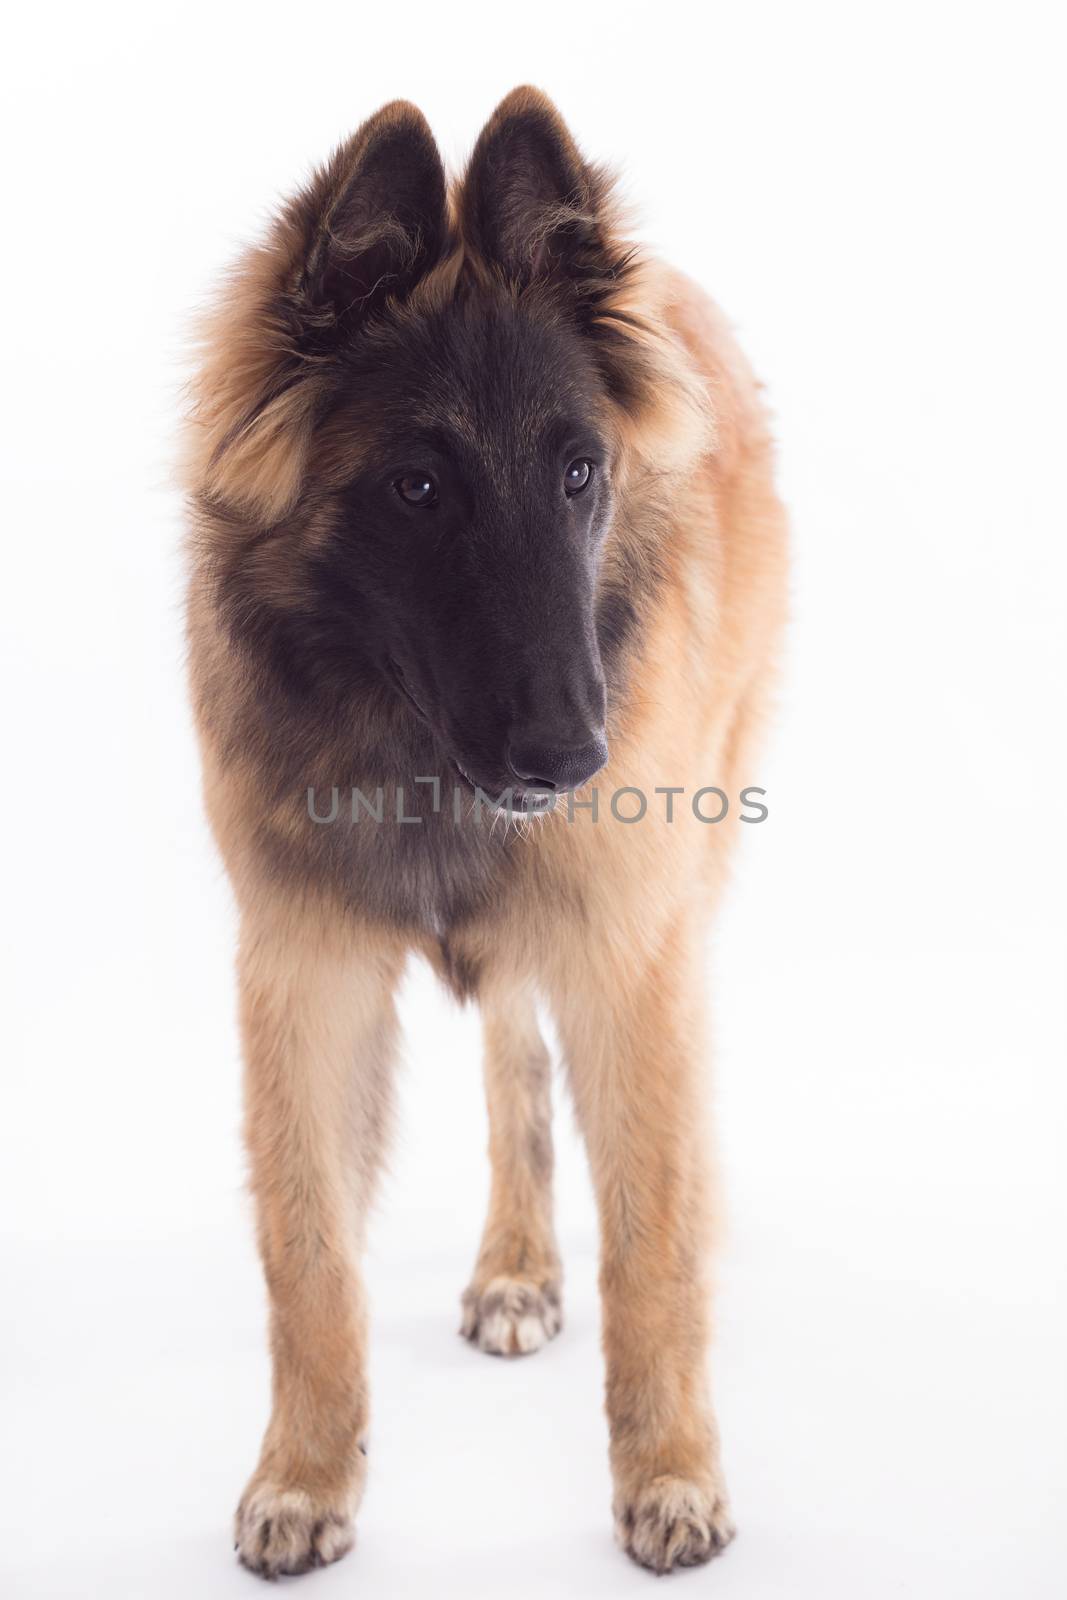 Belgian Shepherd Tervuren dog puppy, headshot, white studio background, headshot, isolated by avanheertum